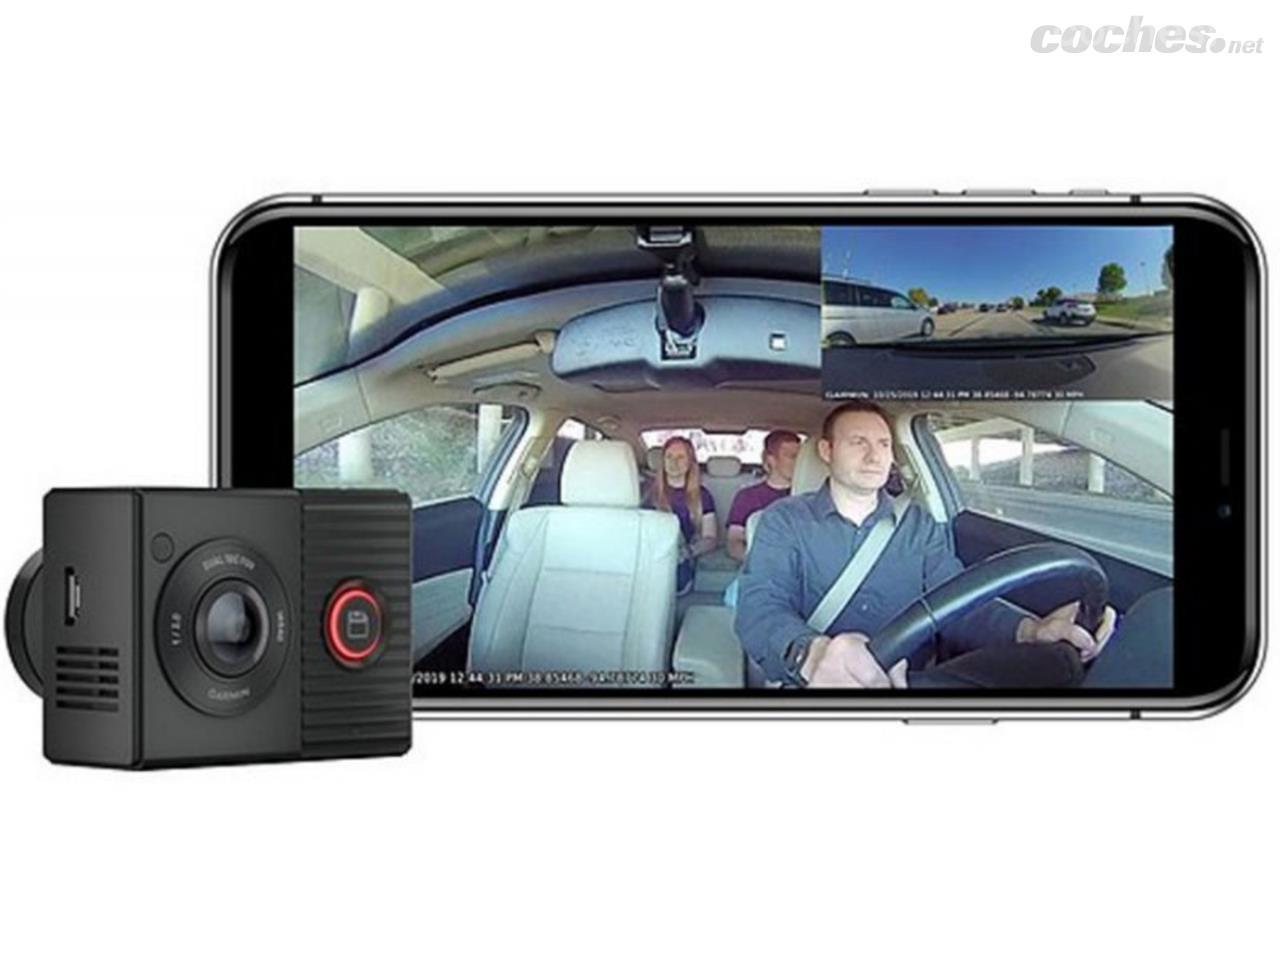 Es legal llevar una cámara grabando en el coche?